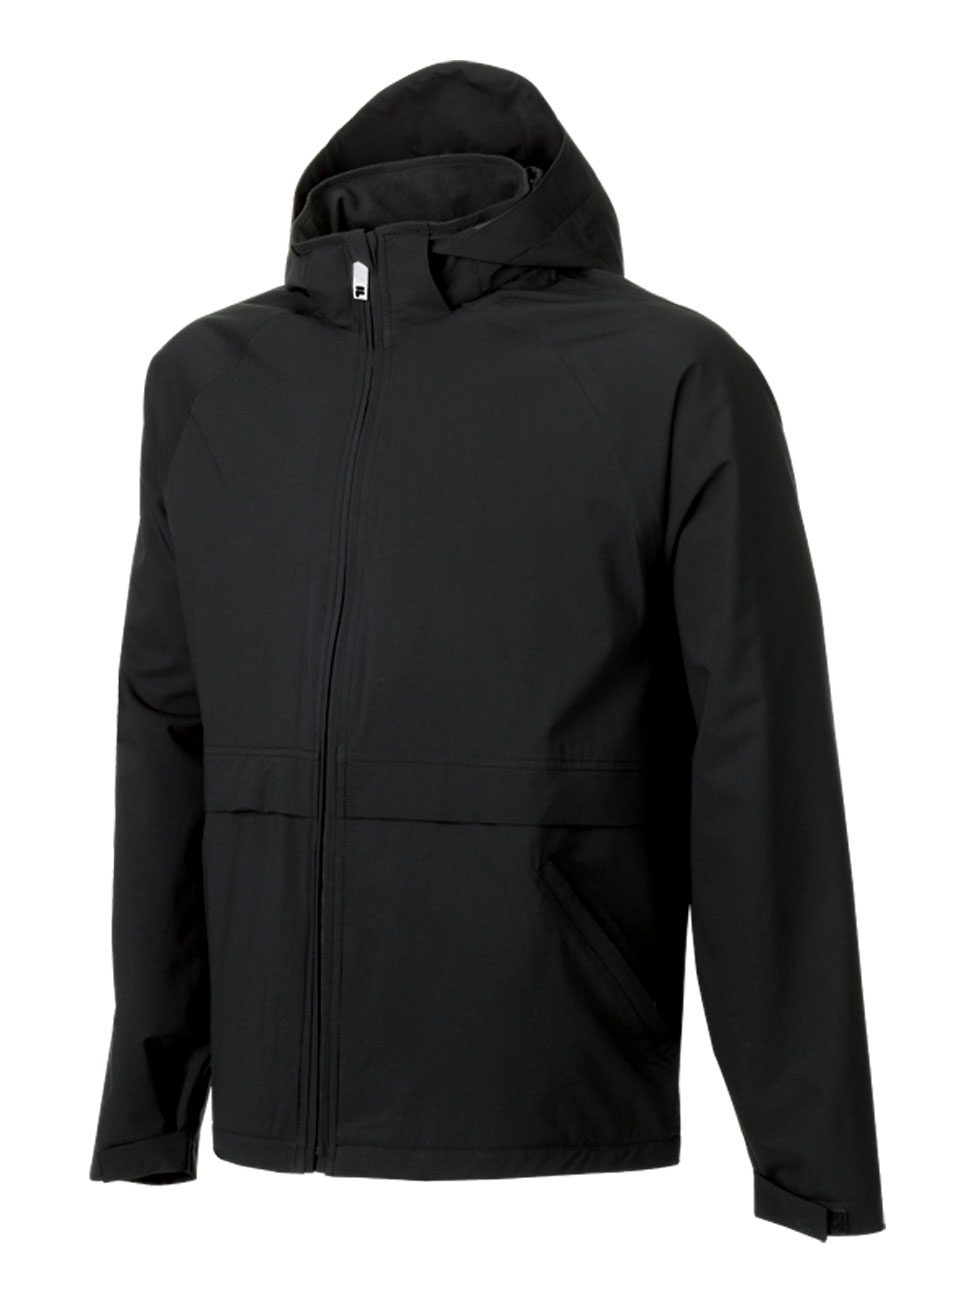 Fila Men's London Waterproof Wind Jacket #FA3710 Black